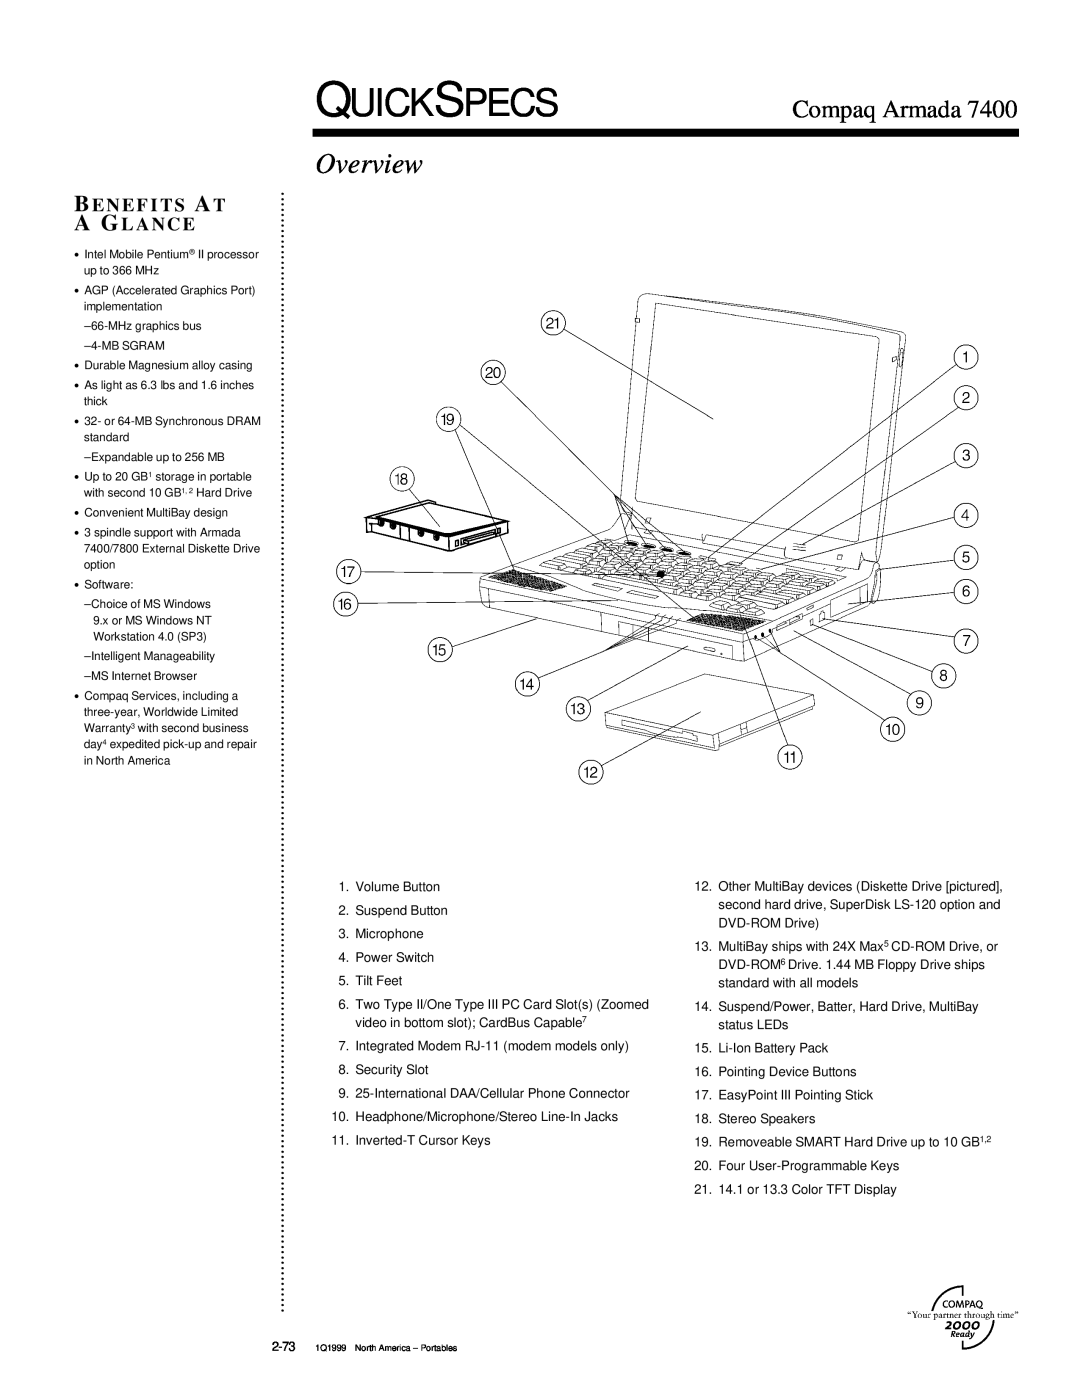 Compaq 7400 warranty Quickspecs, Overview, Compaq Armada, B E N E F I T S A T A G L A N C E 